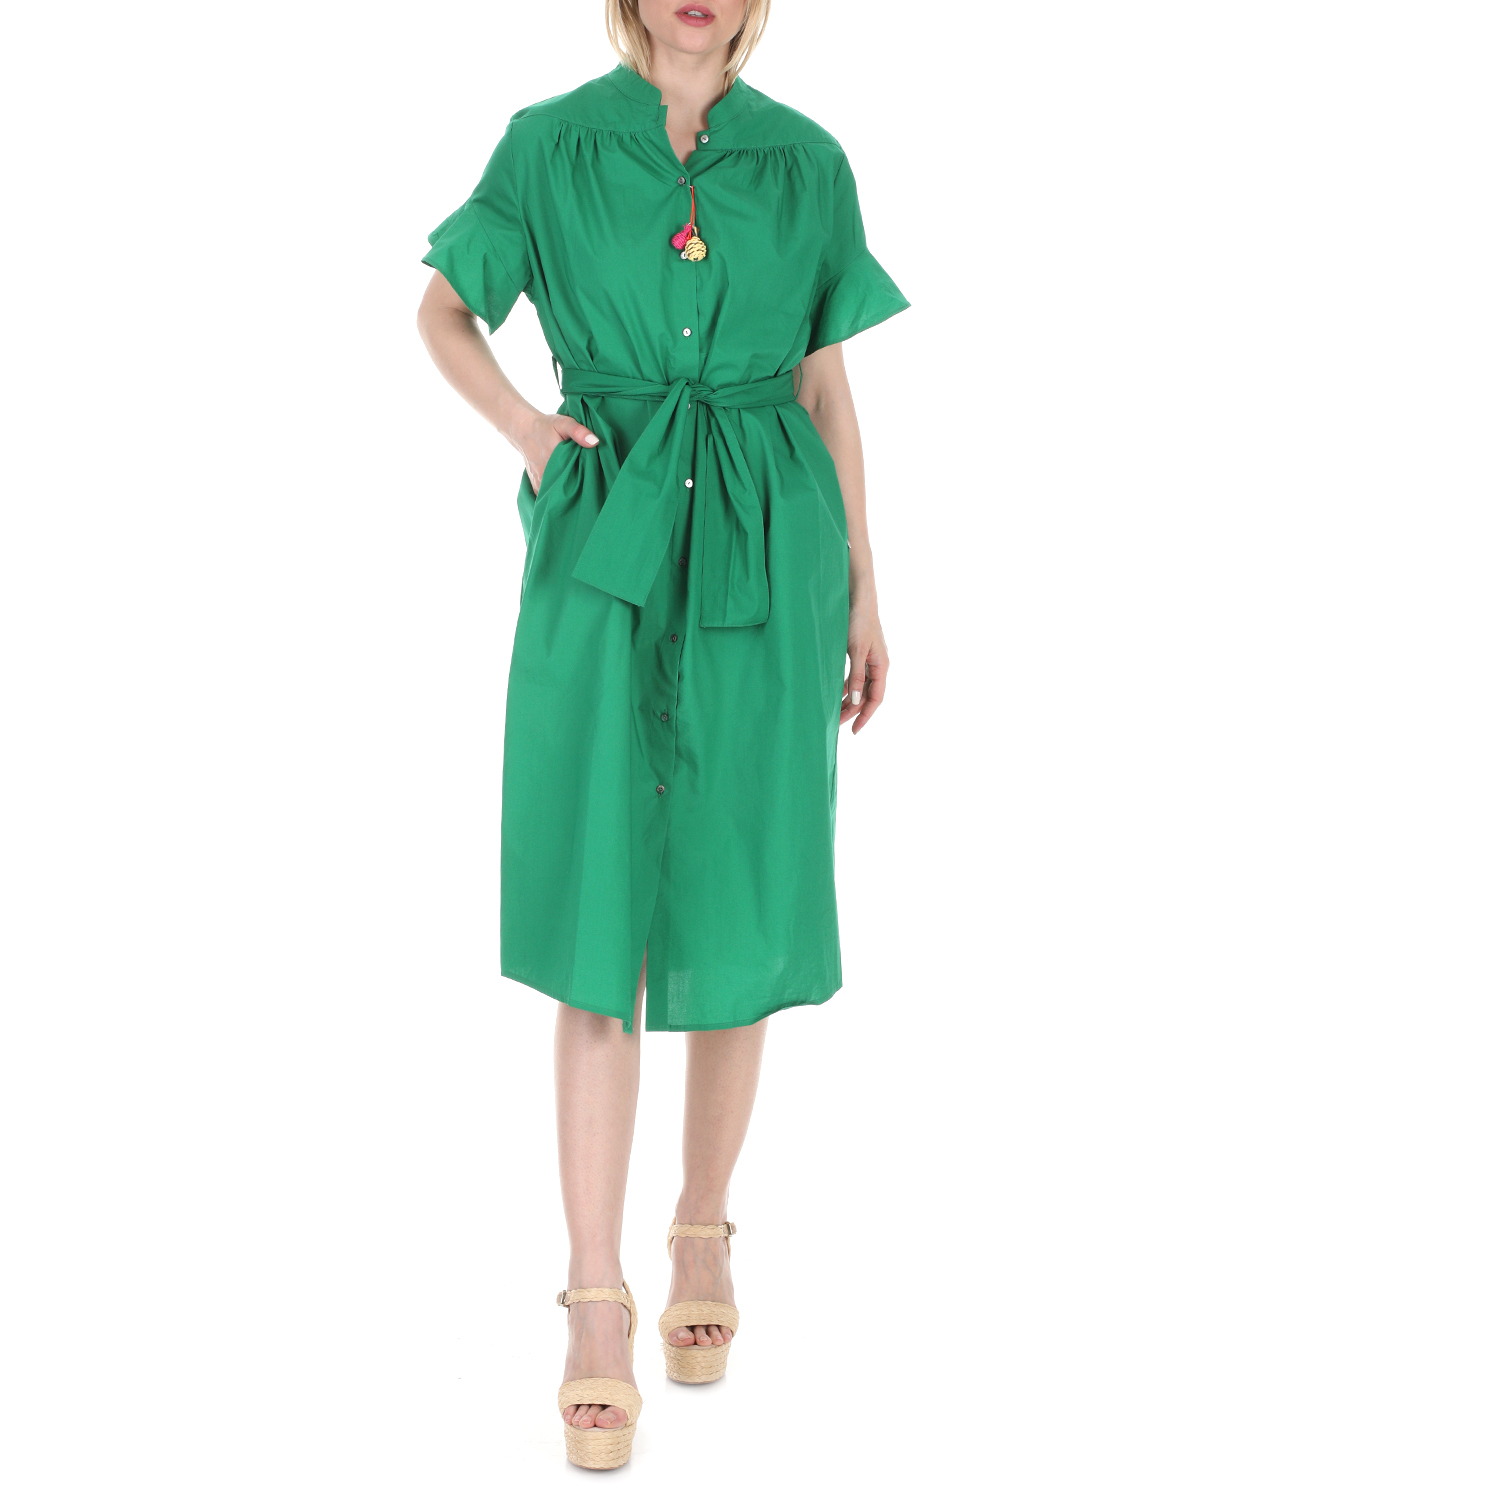 Γυναικεία/Ρούχα/Φορέματα/Μέχρι το γόνατο SCOTCH & SODA - Γυναικείο midi φόρεμα SCOTCH & SODA πράσινο